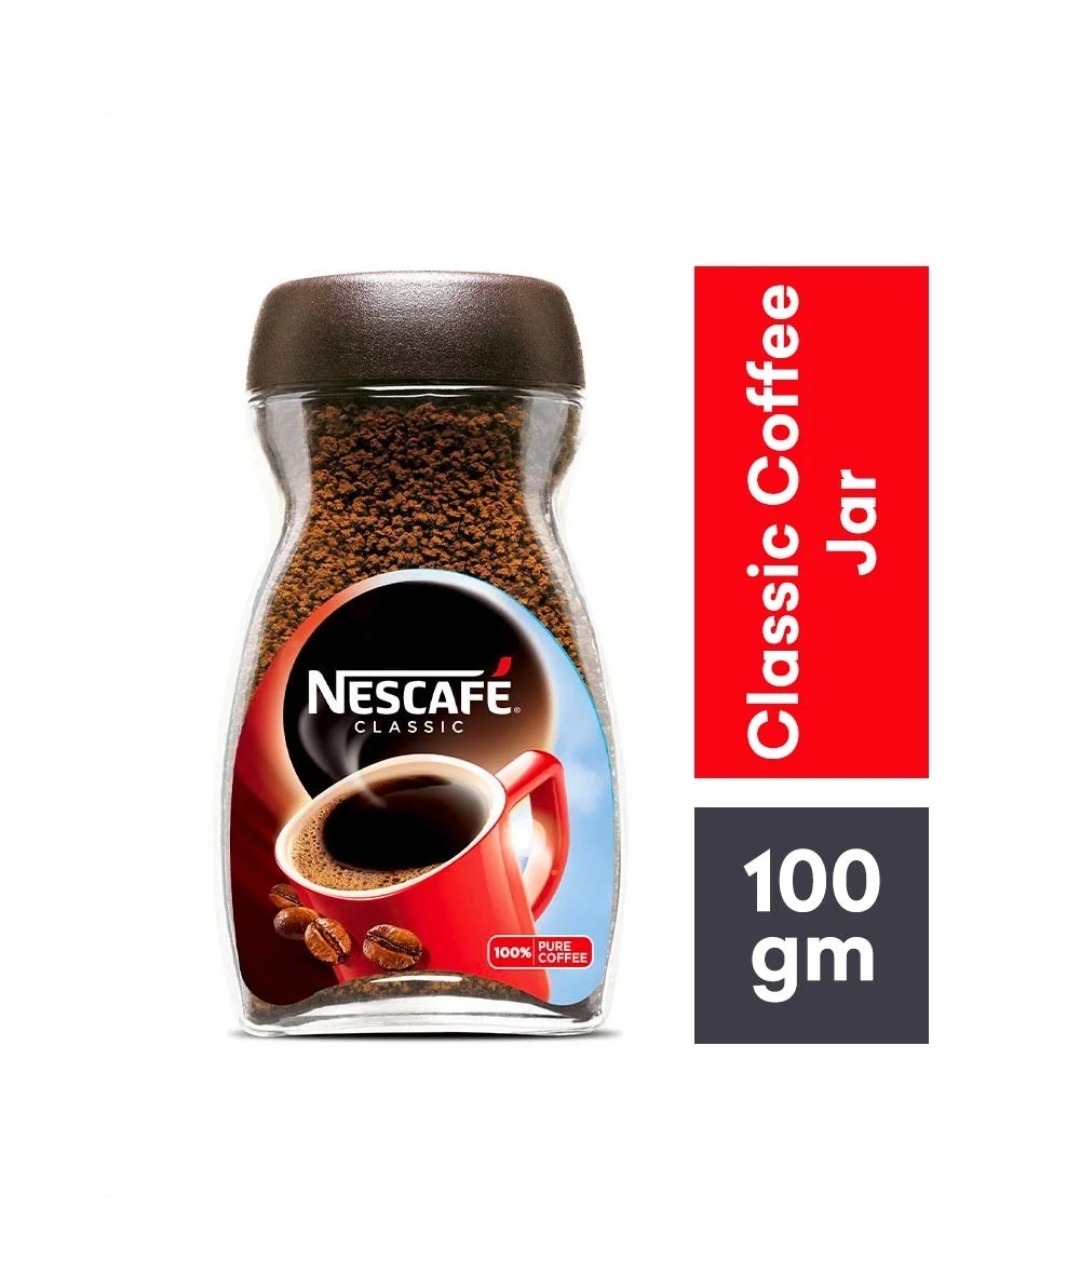 Nescafe Classic Coffee (Jar), 100 gm